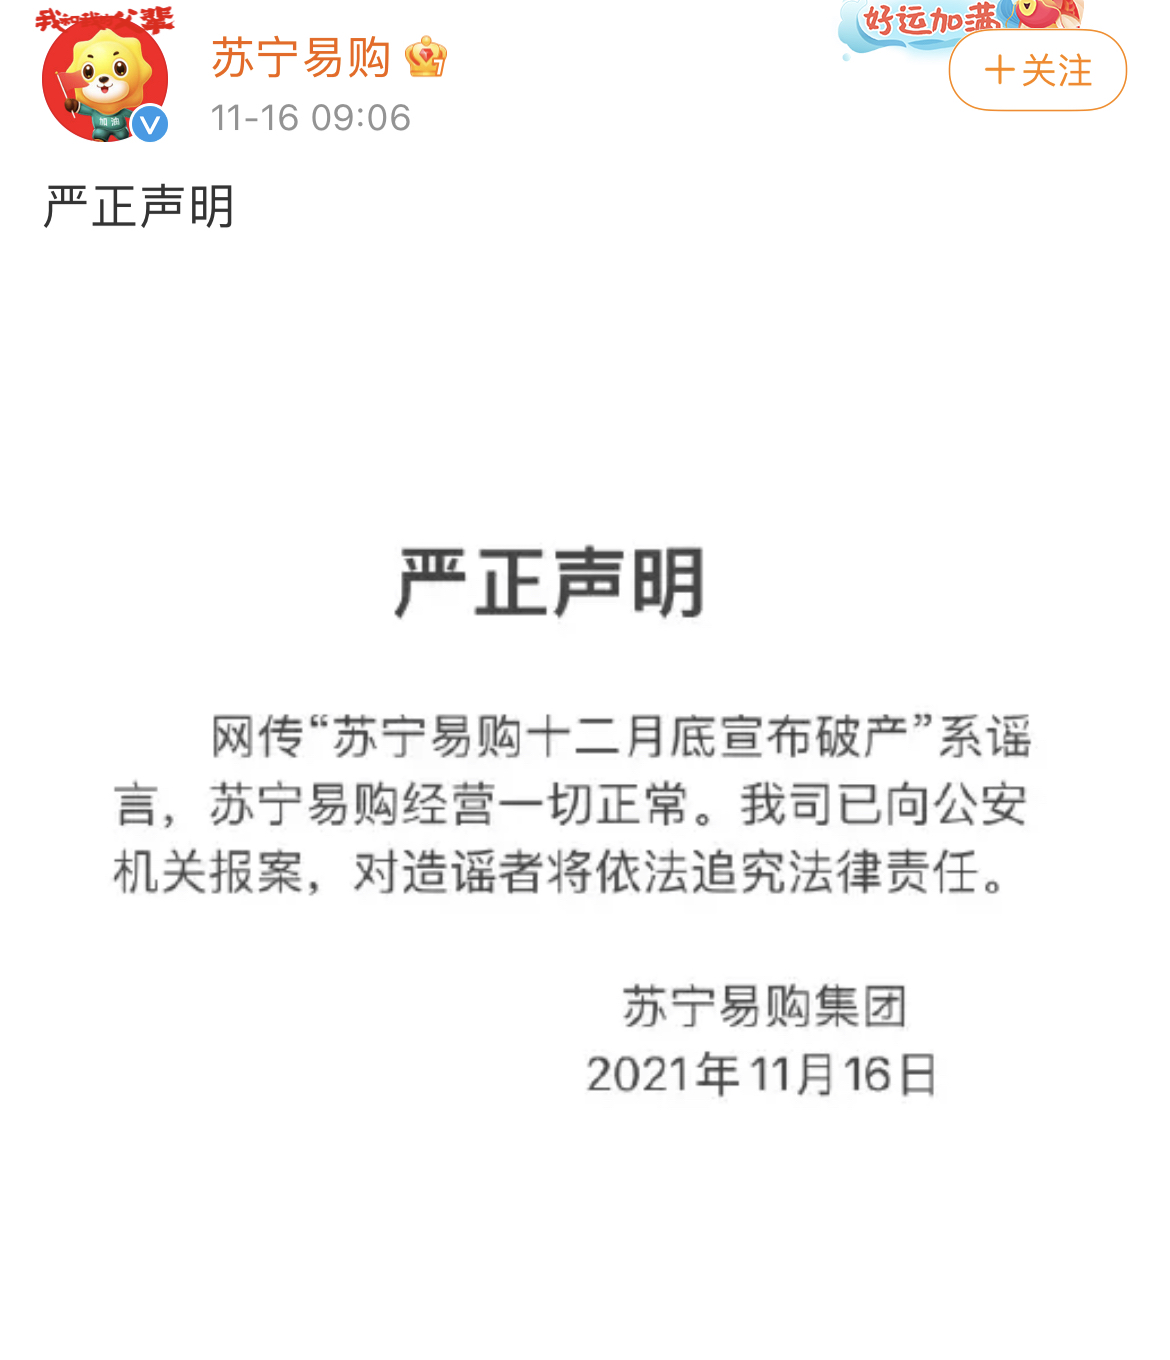 苏宁易购官方微博发布辟谣声明